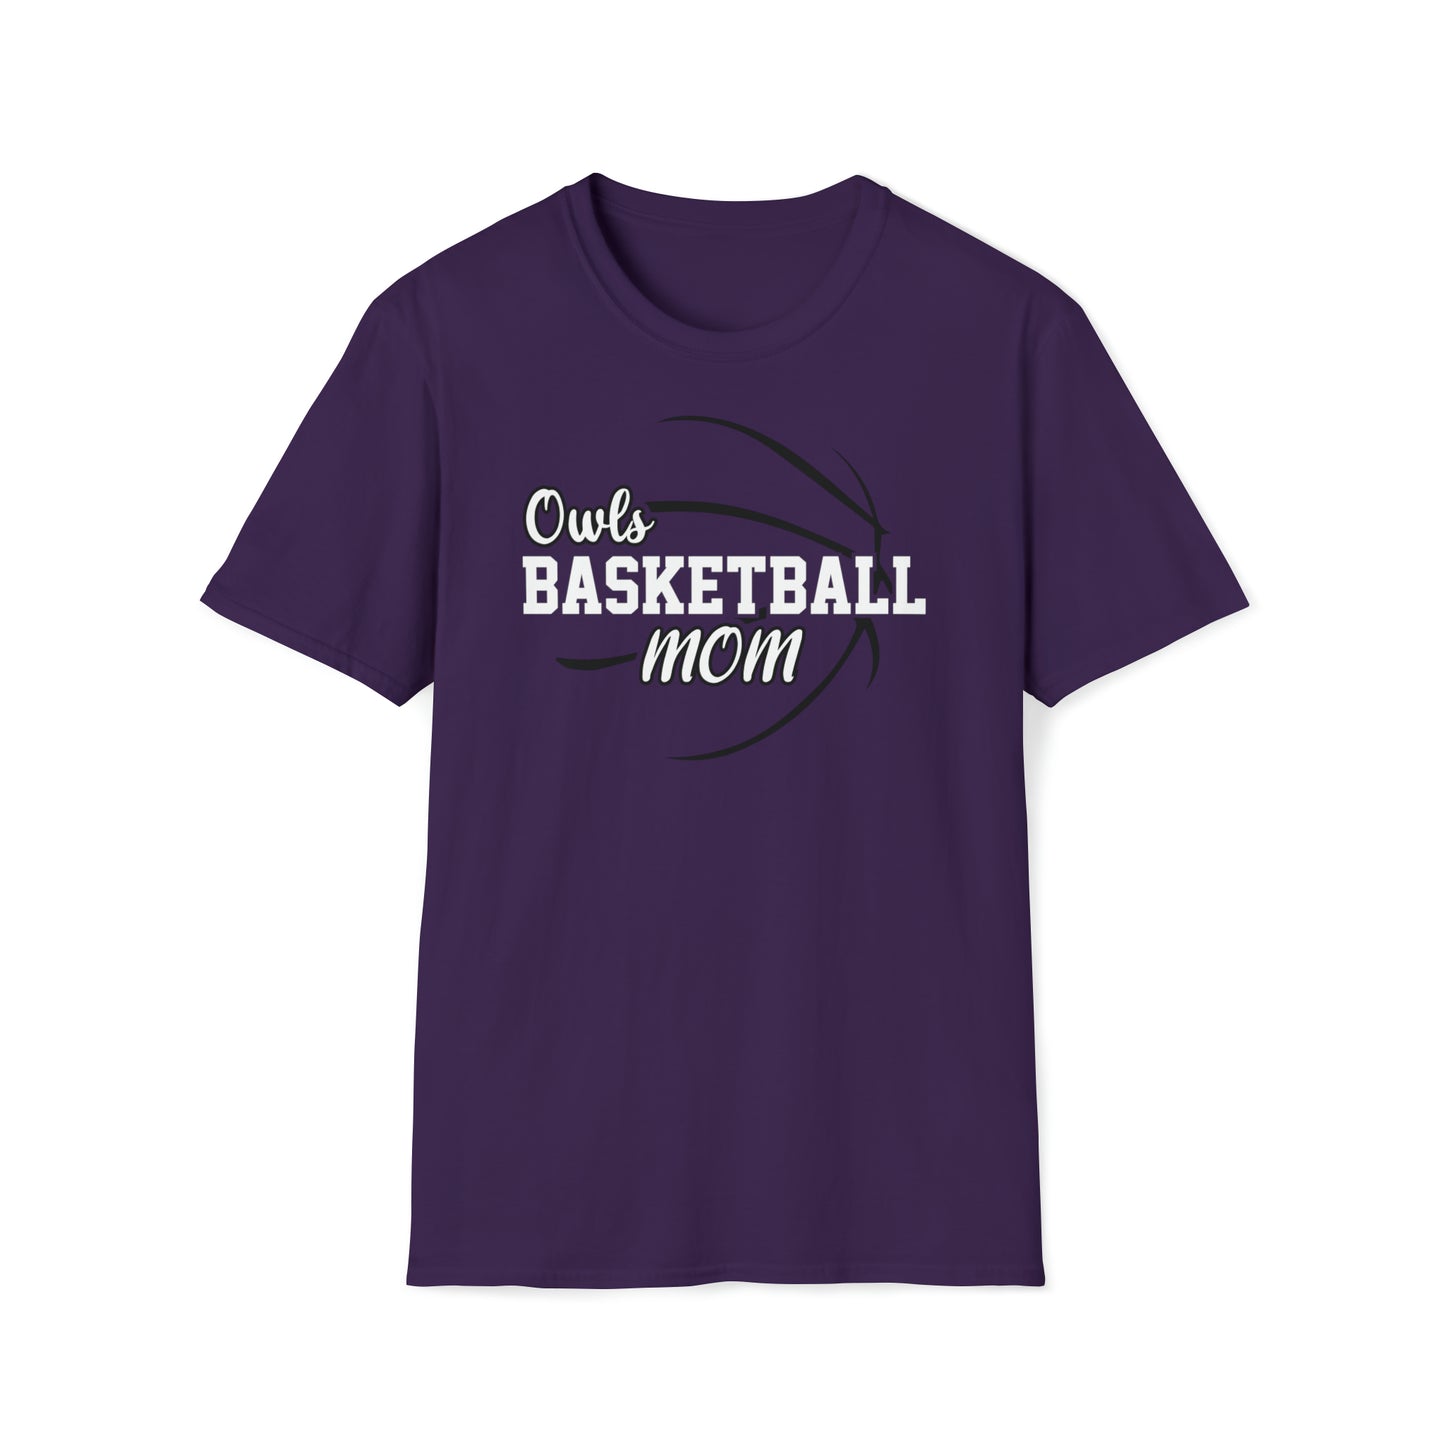 Owls Basketball Mom Unisex Softstyle T-Shirt